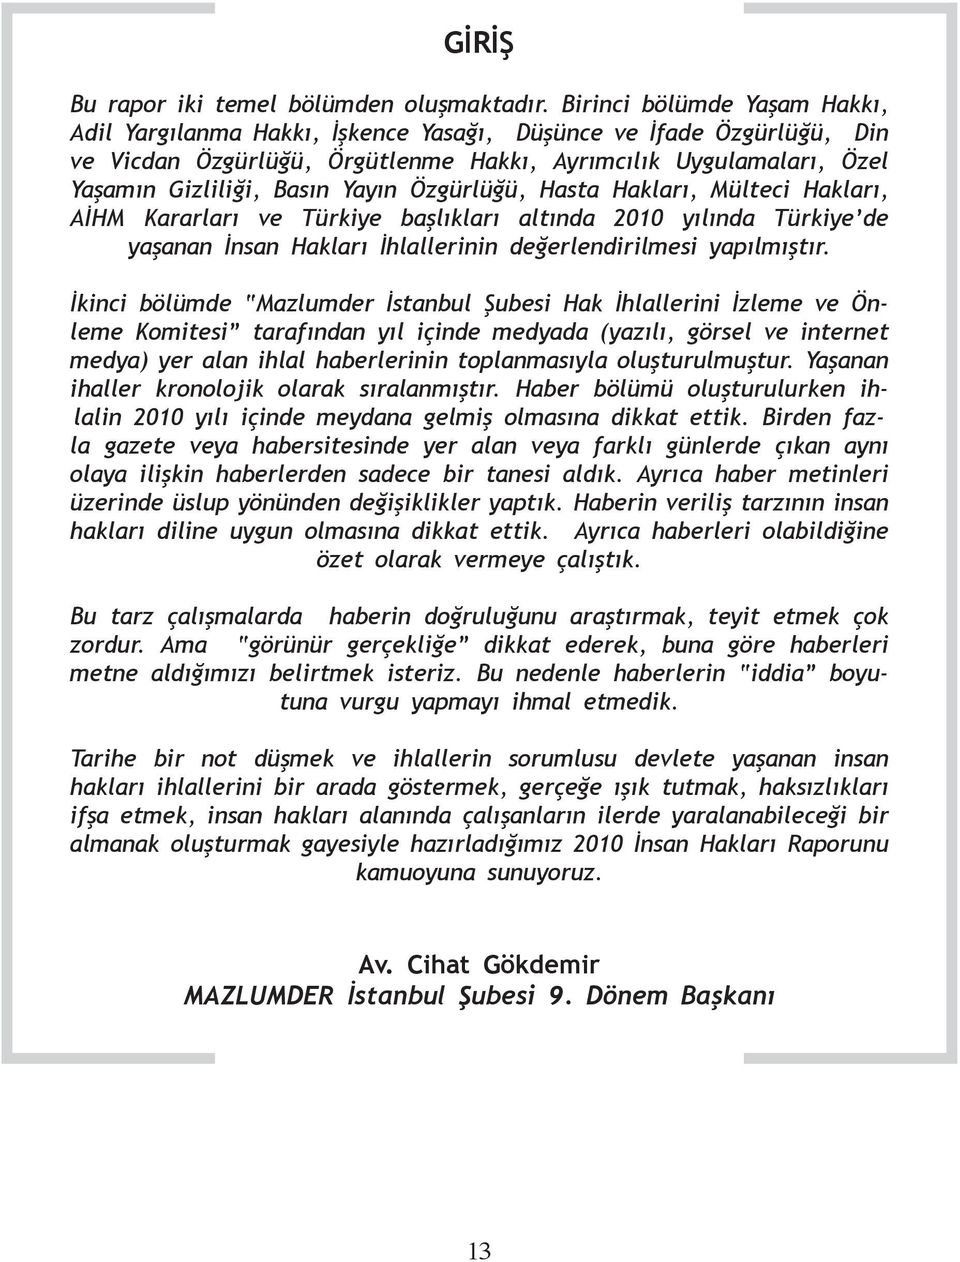 Özgürlüğü, Hasta Hakları, Mülteci Hakları, AİHM Kararları ve Türkiye başlıkları altında 2010 yılında Türkiye de yaşanan İnsan Hakları İhlallerinin değerlendirilmesi yapılmıştır.